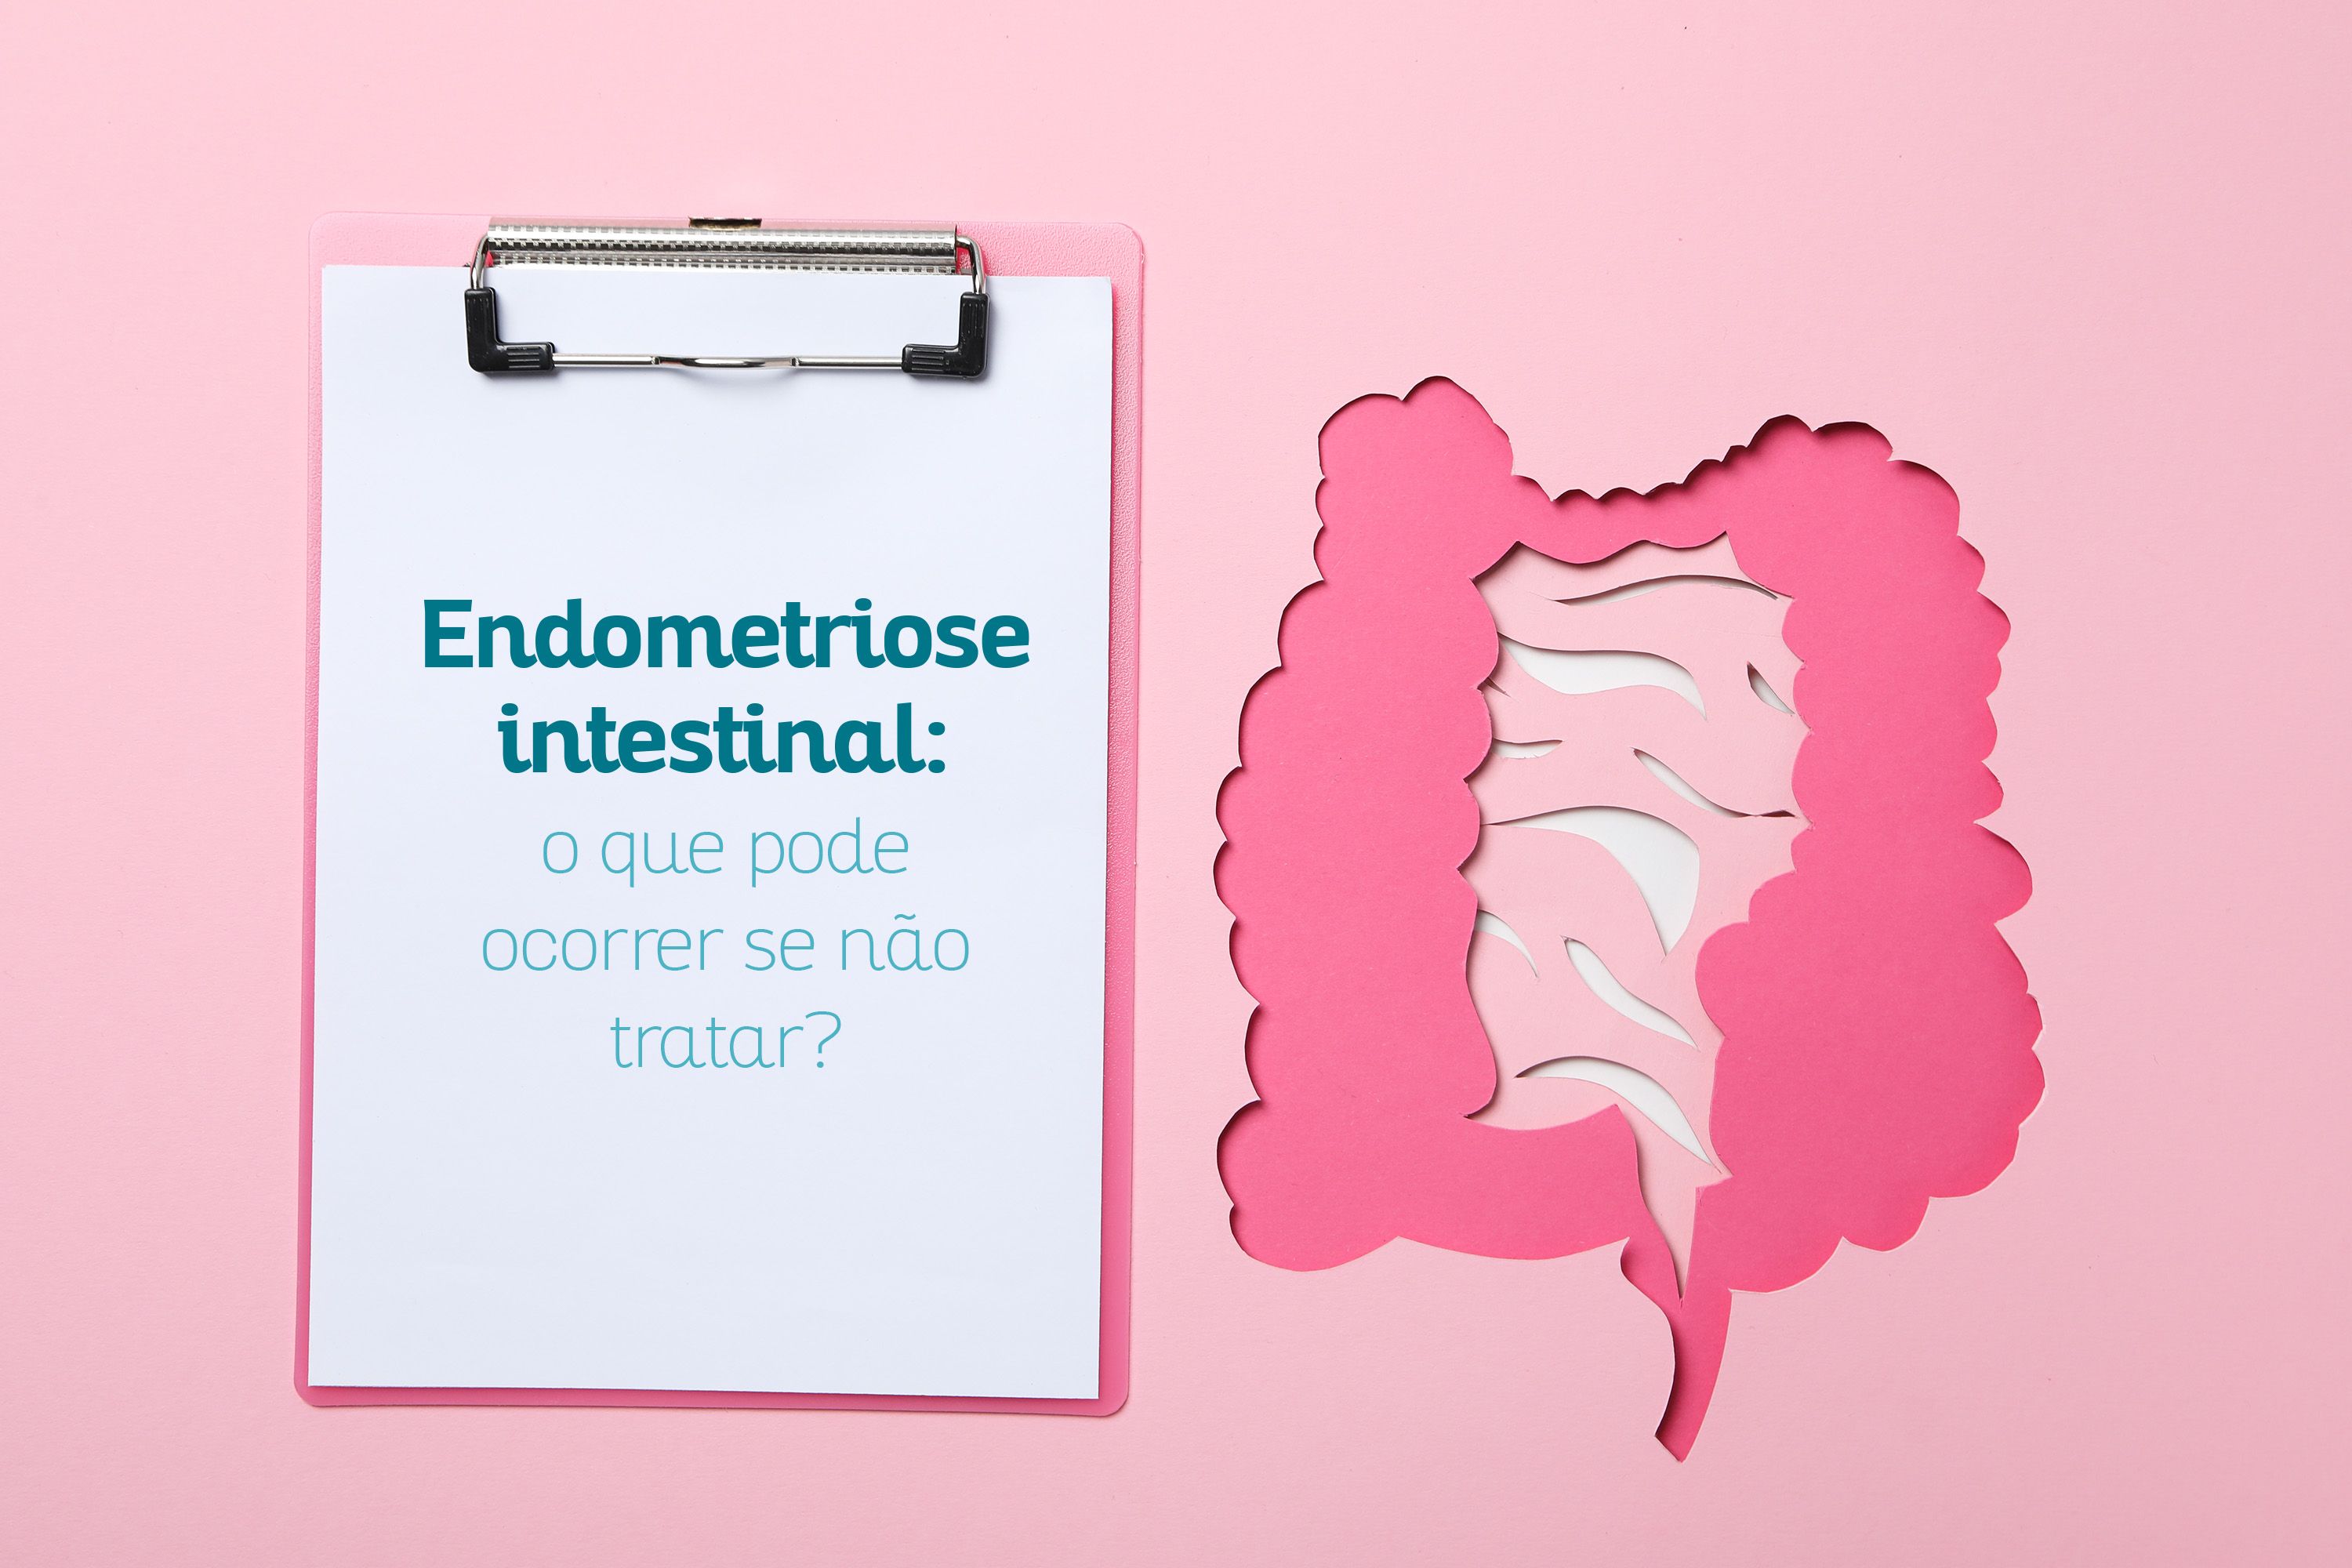 Endometriose intestinal: o que pode ocorrer se no tratar?